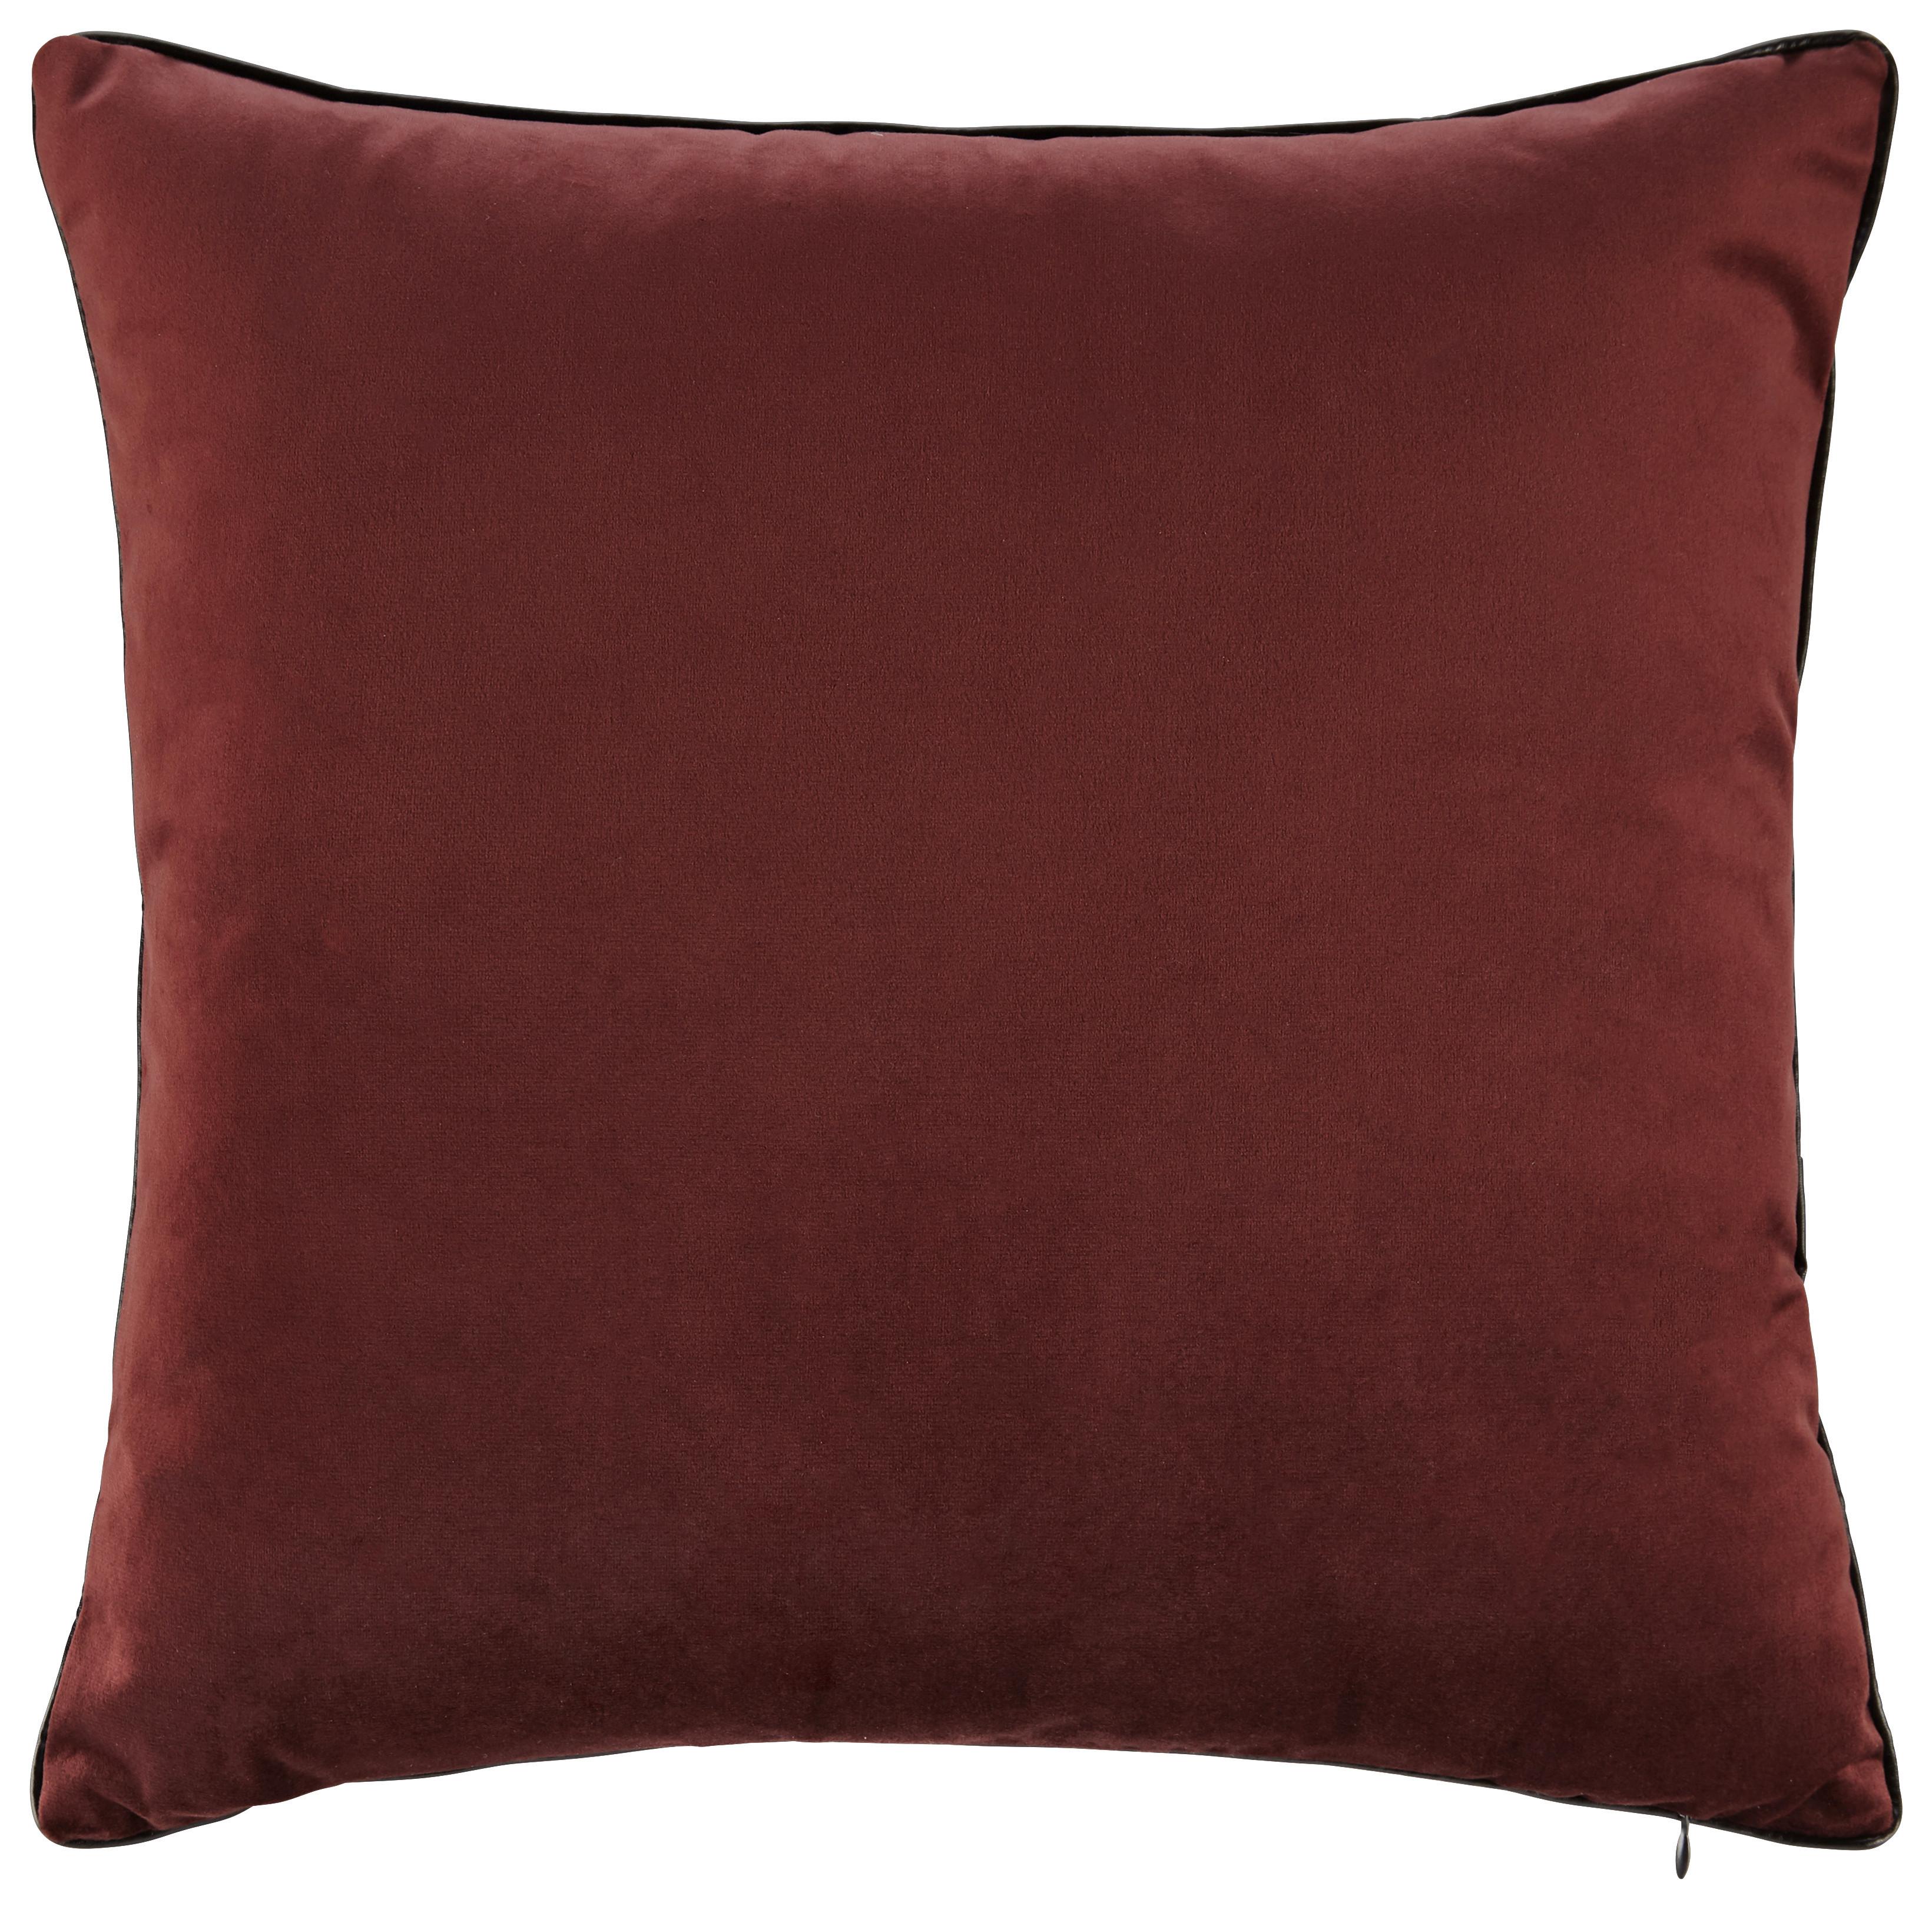 Vankúš Malea 45x45cm - červená, Moderný, textil (45/45cm) - Modern Living